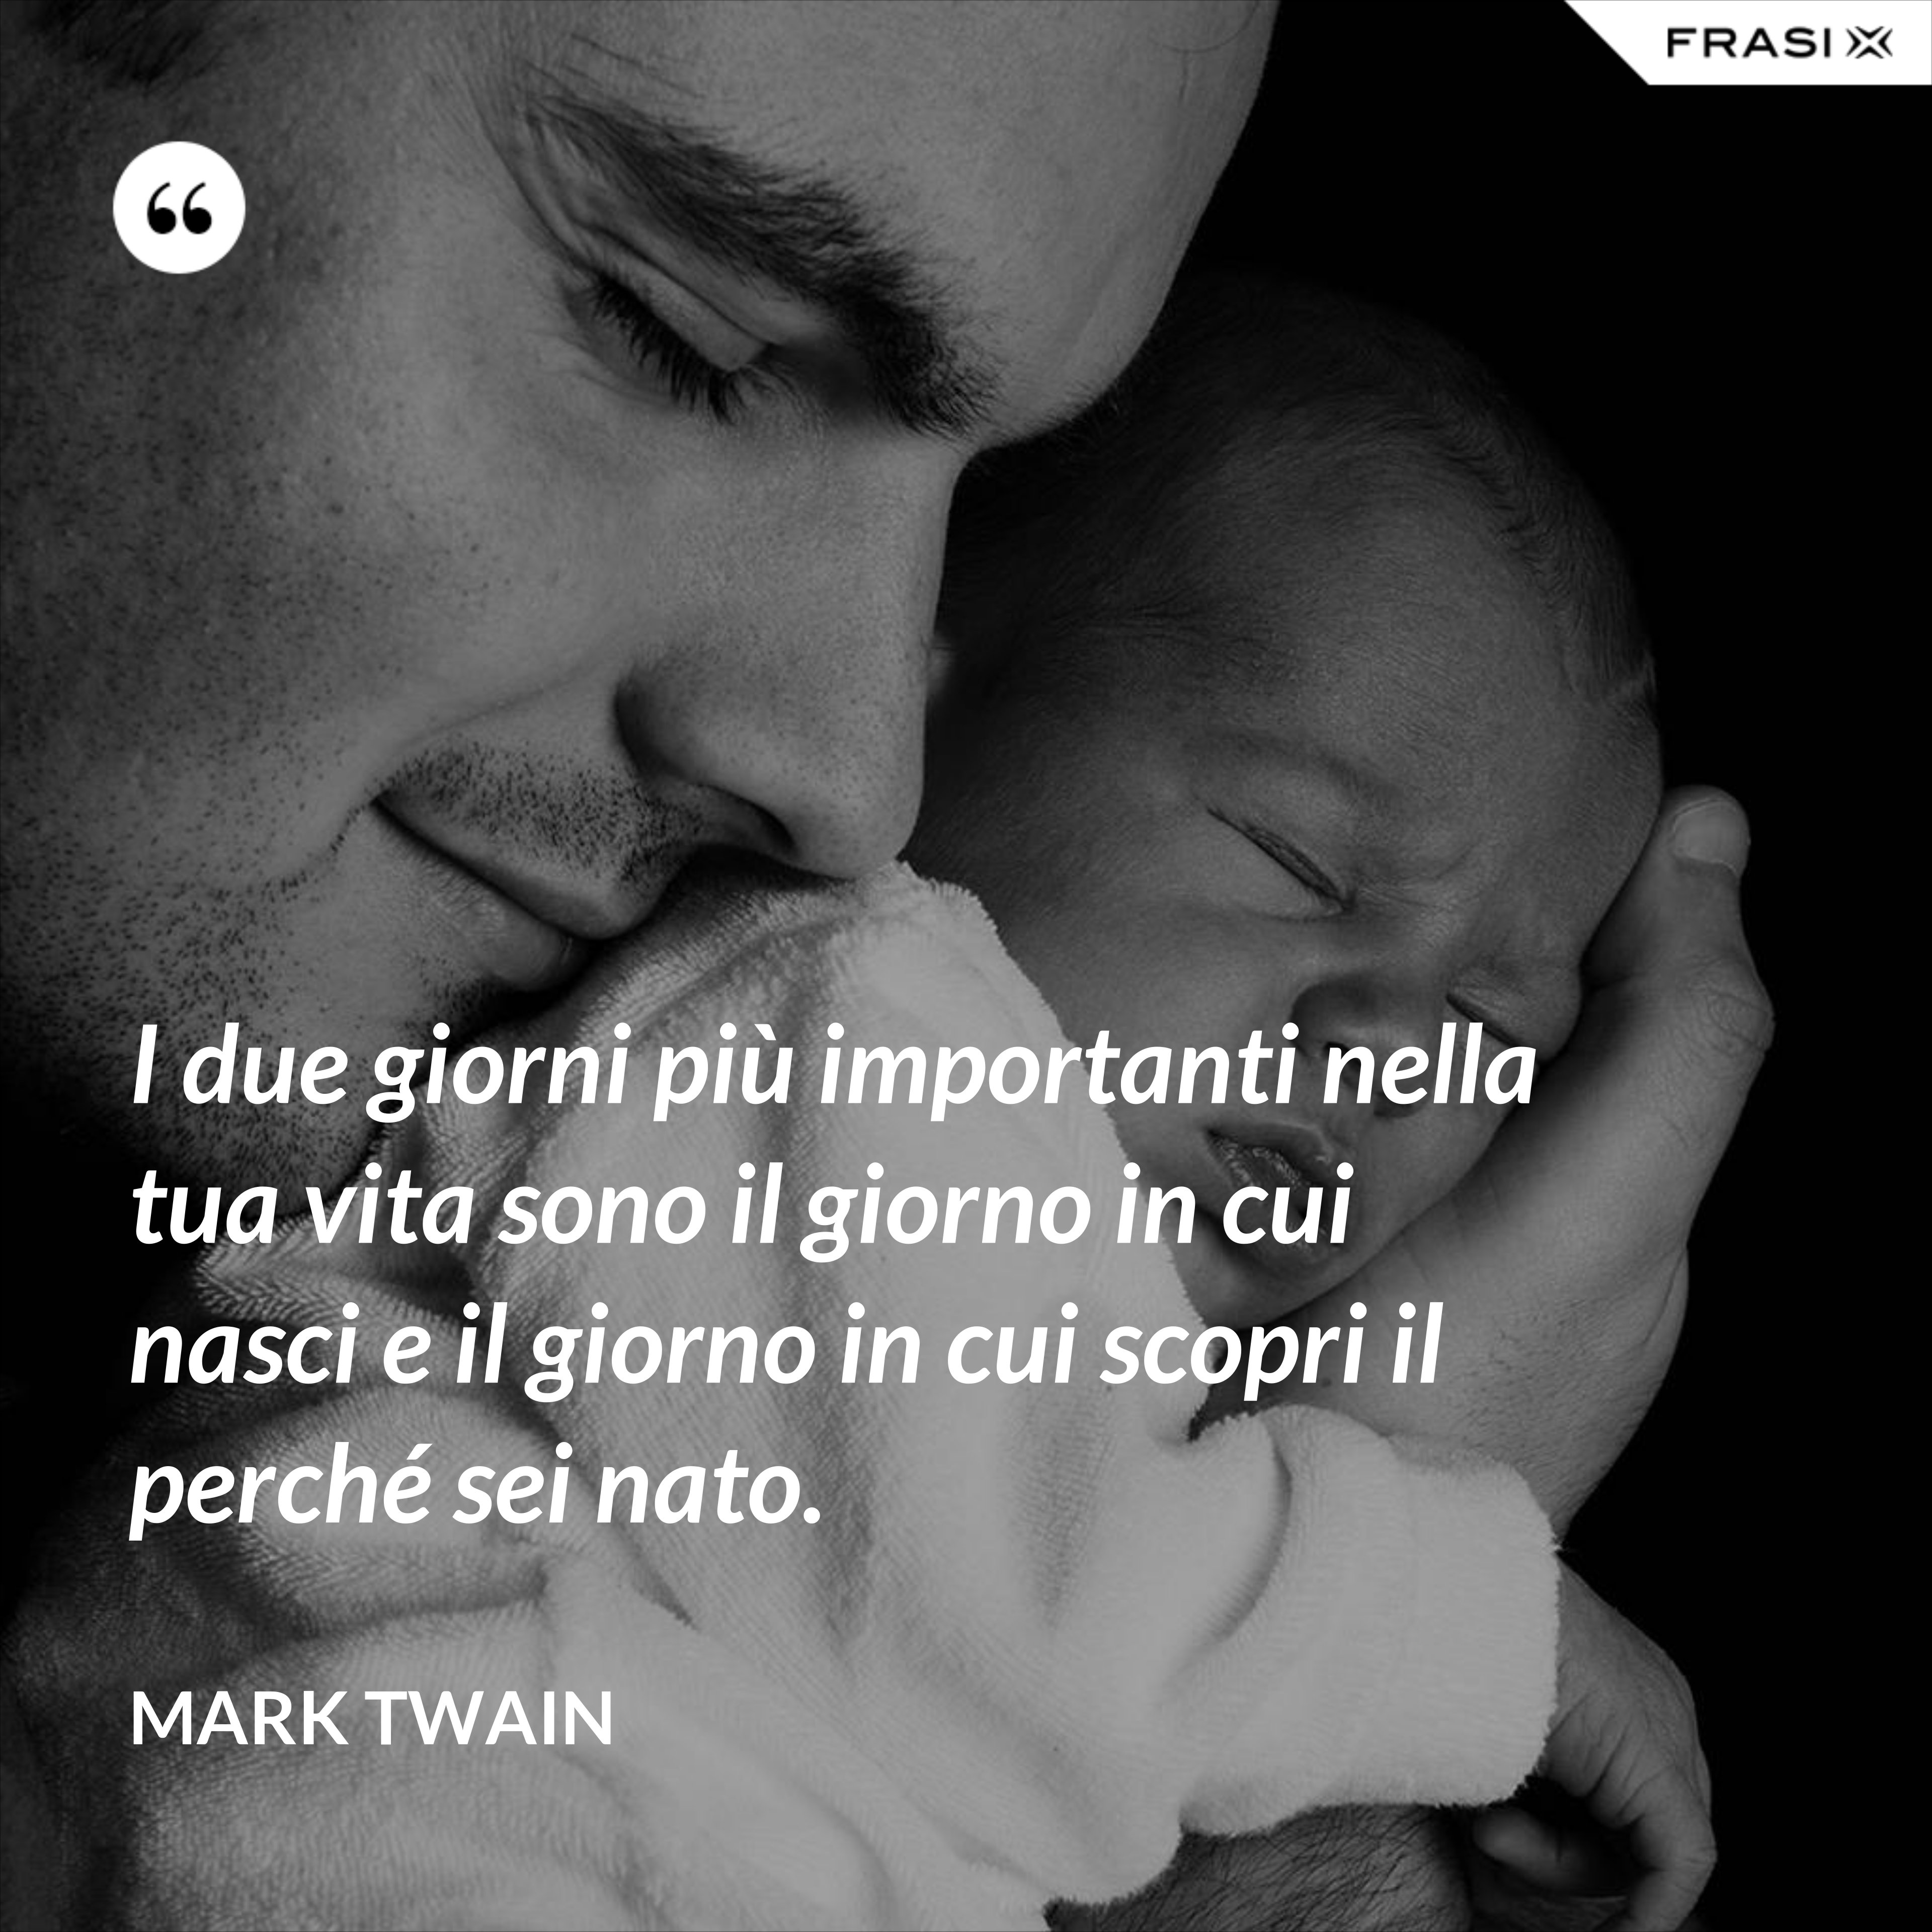 I due giorni più importanti nella tua vita sono il giorno in cui nasci e il giorno in cui scopri il perché sei nato. - Mark Twain